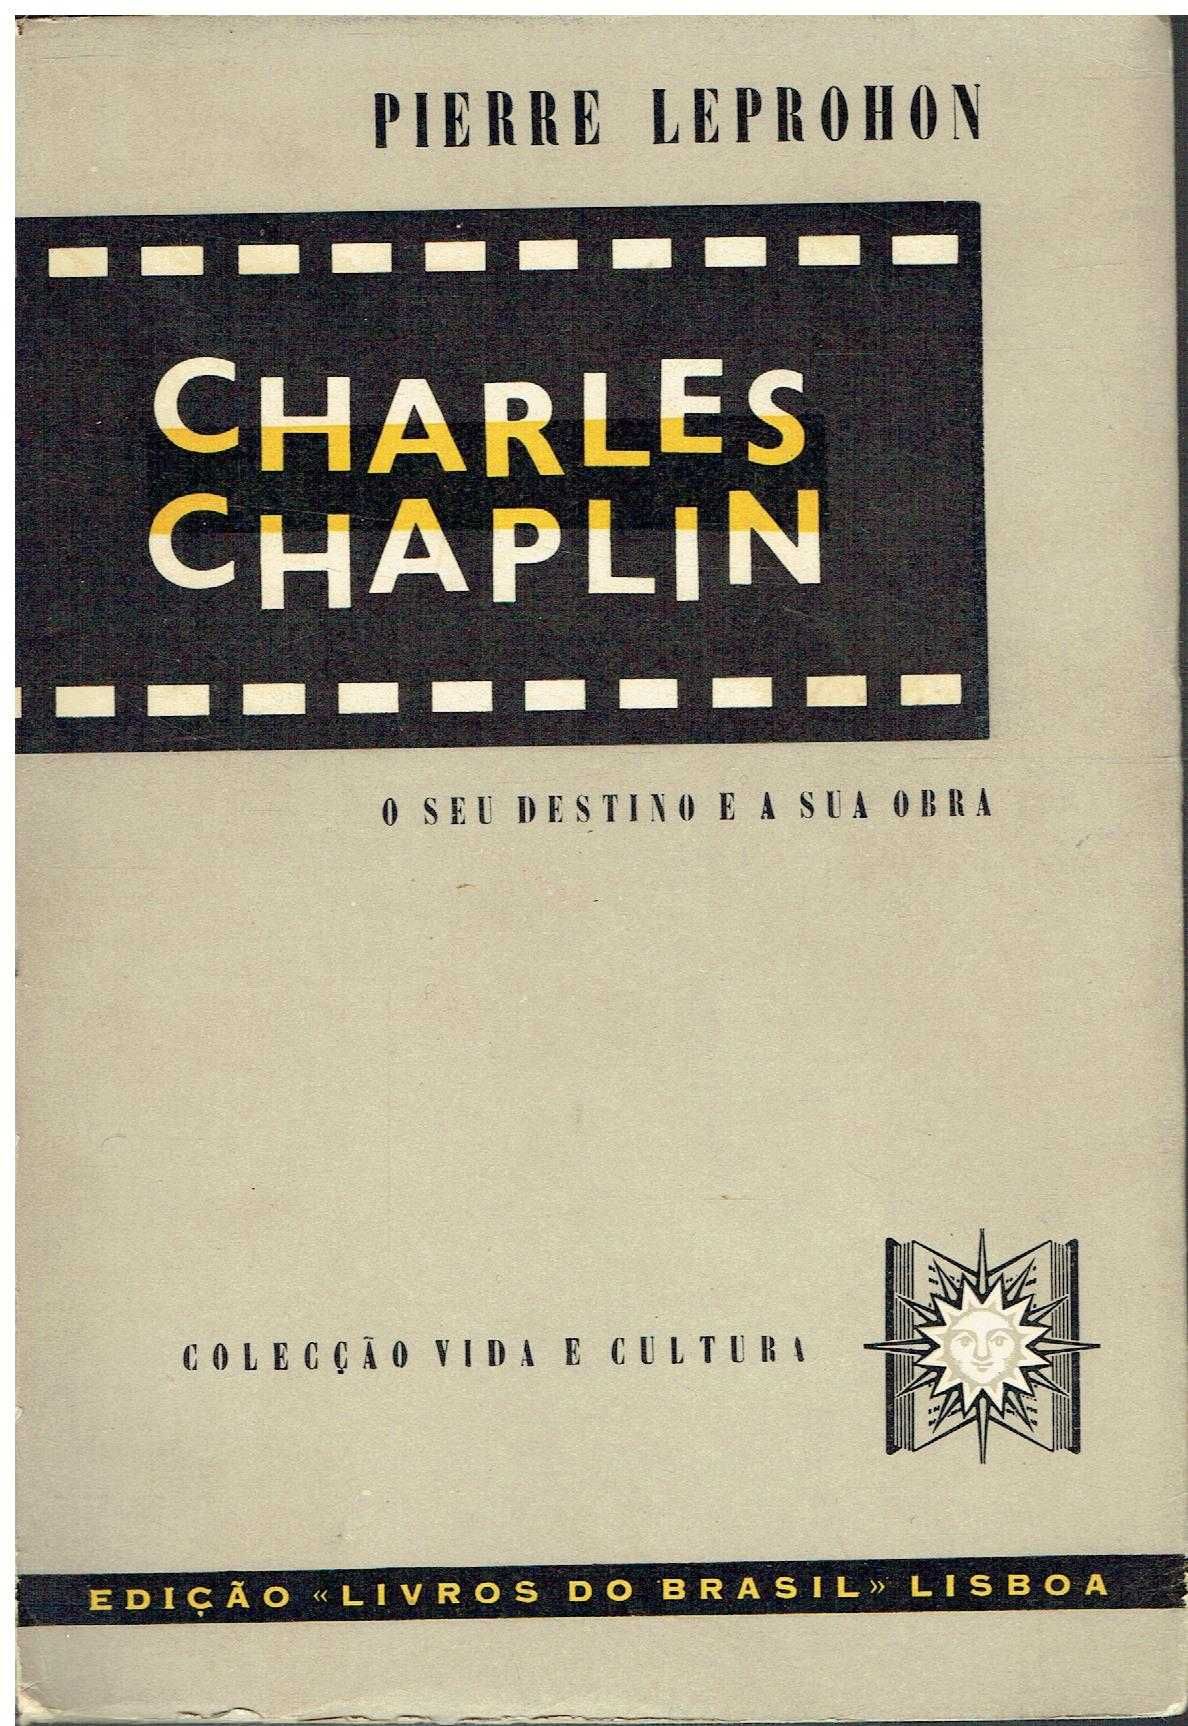 3640

Charles Chaplin O Seu Destino E A Sua Obra